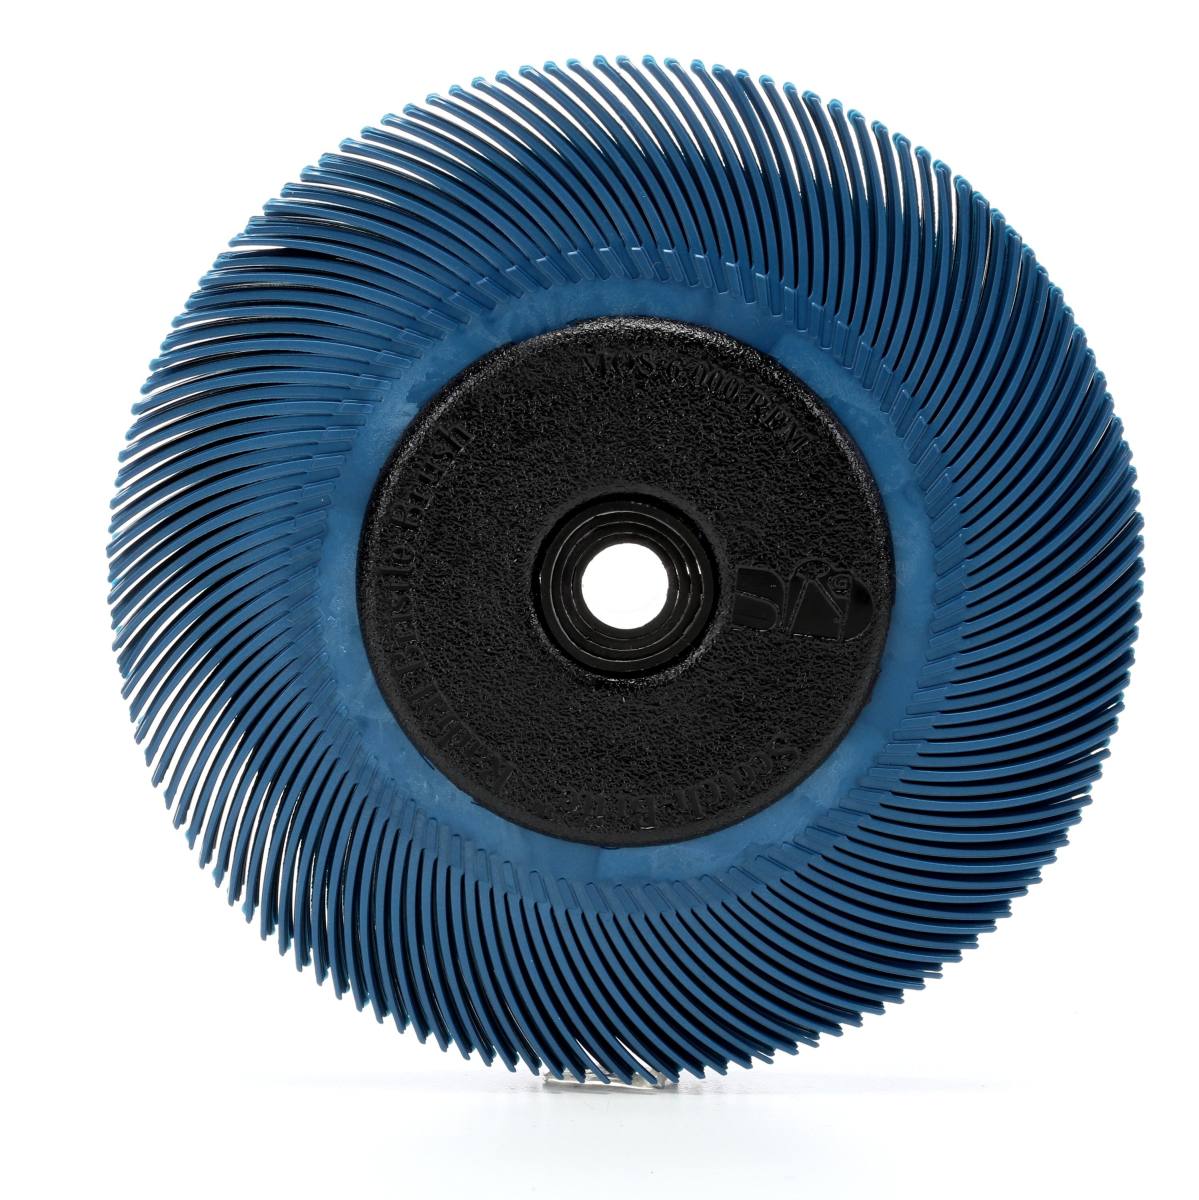 3M Scotch-Brite Radial Bristle Disc BB-ZB mit Flansch, blau, 152,4 mm, P400, Typ C #33214